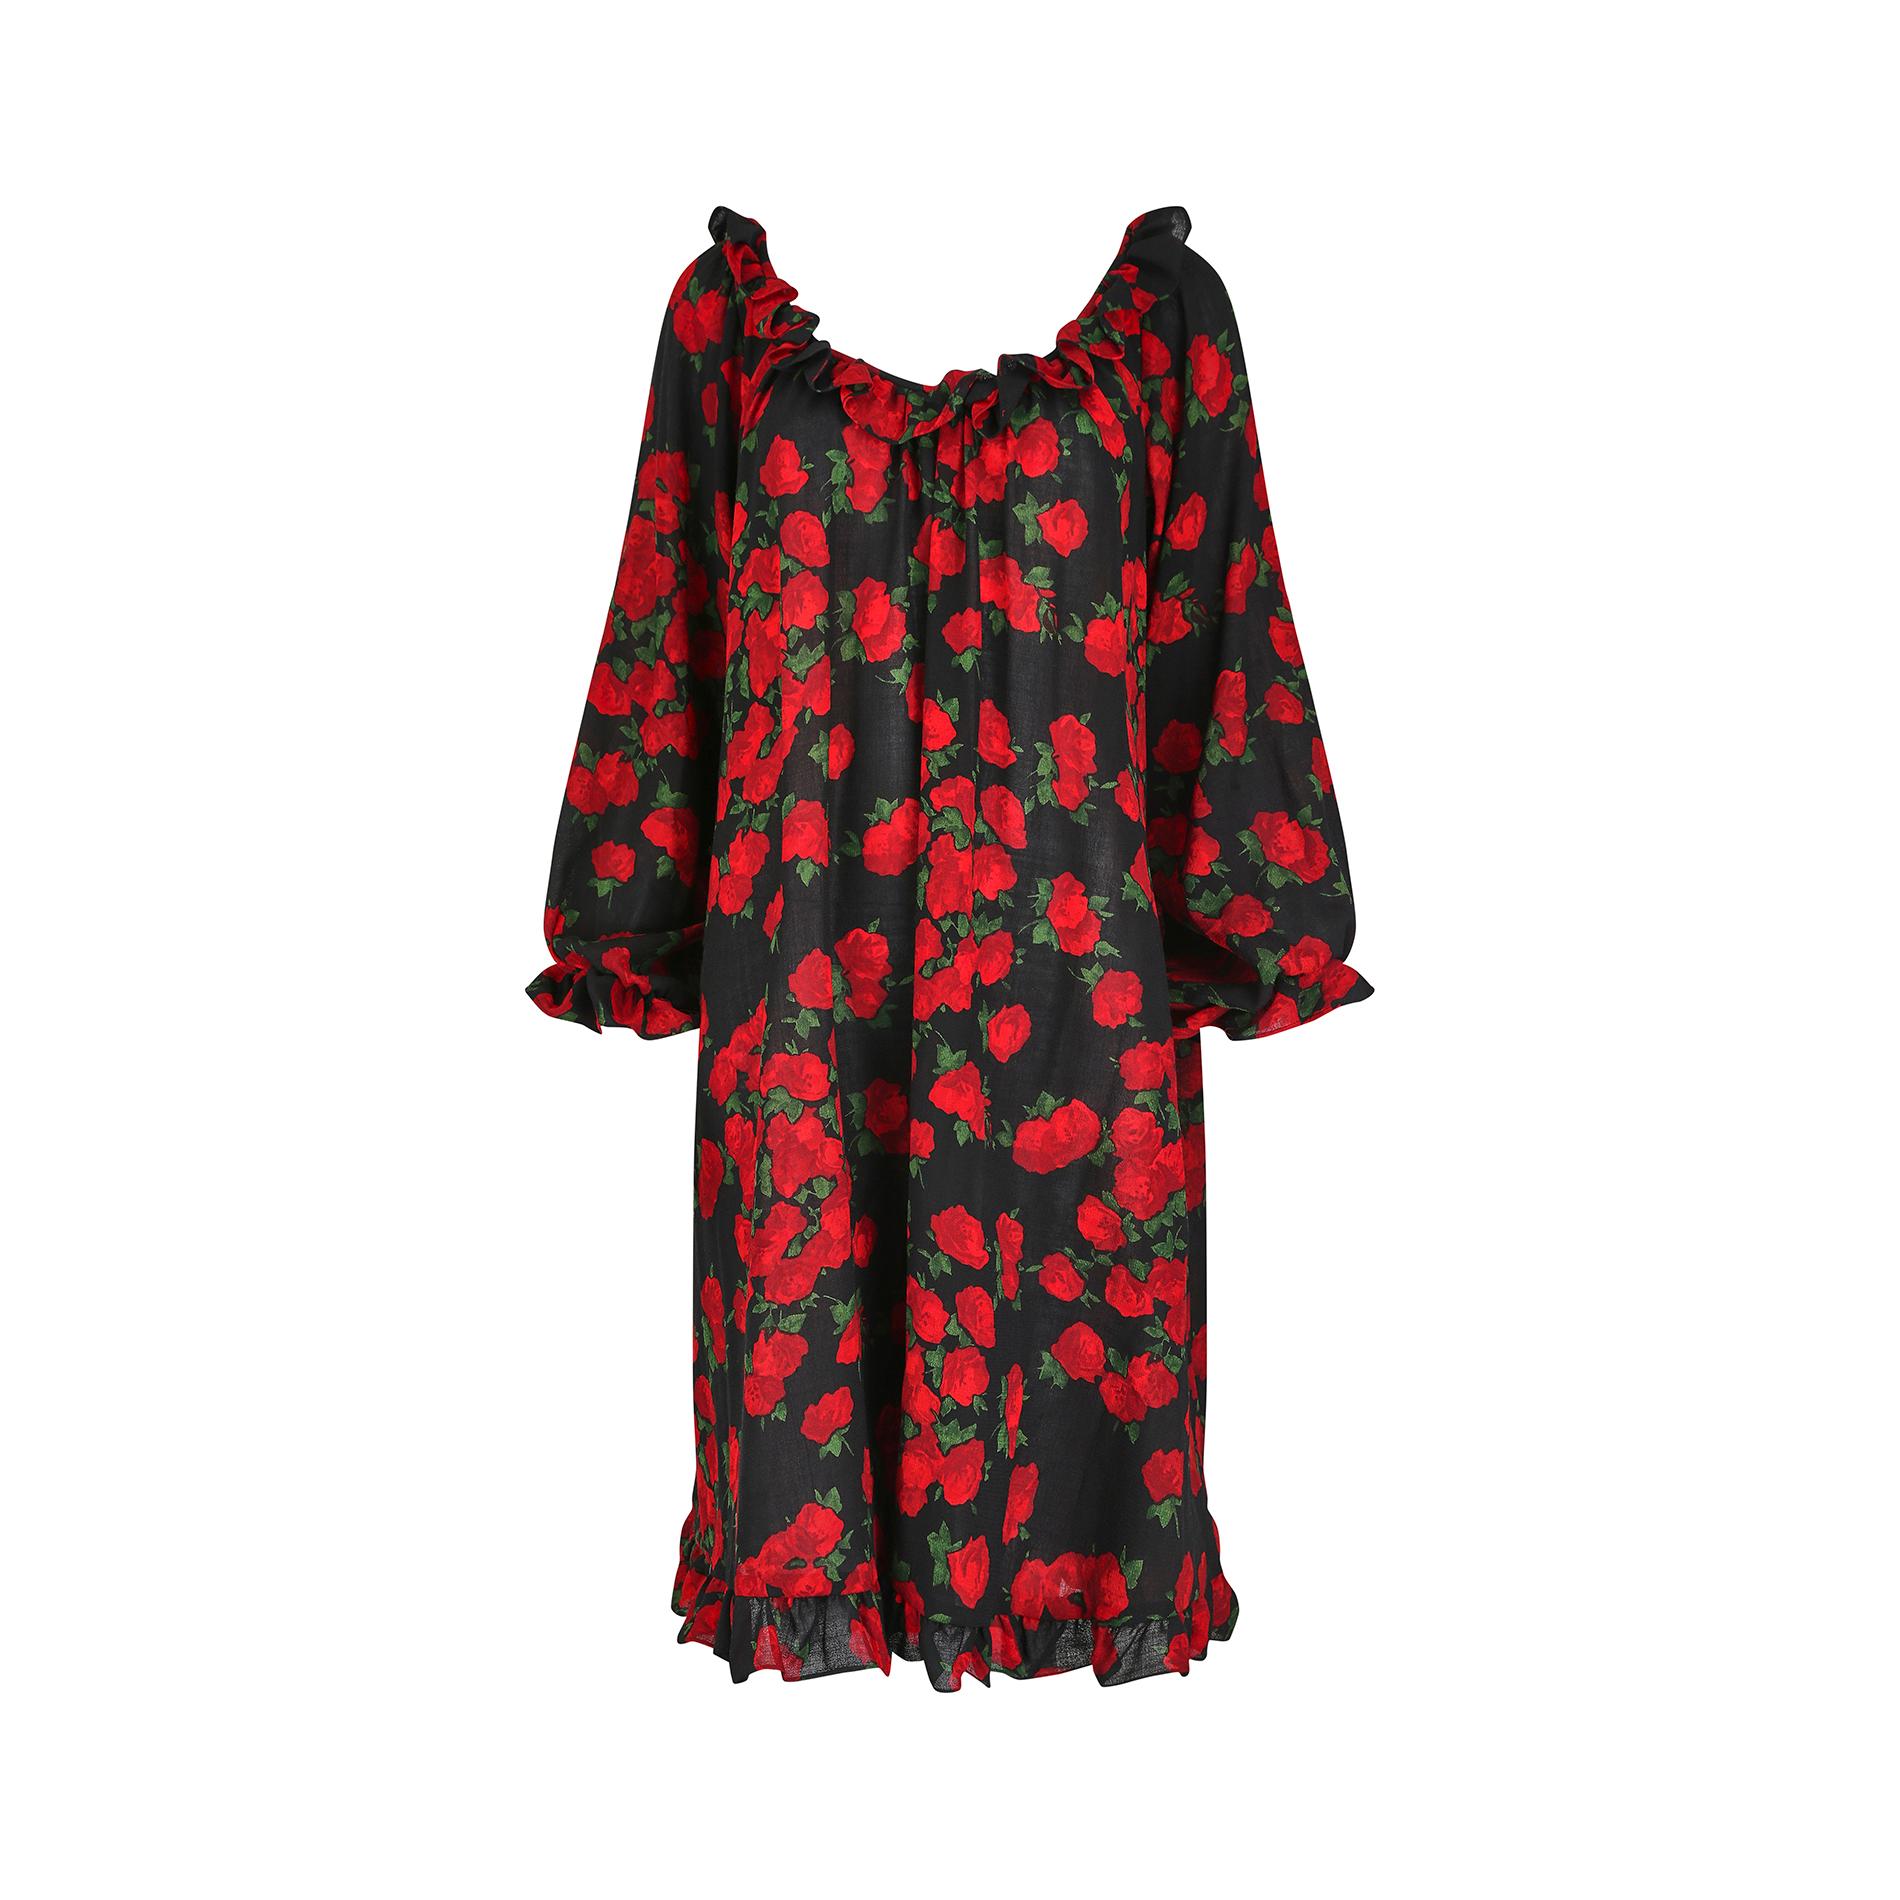 Kleid mit Rosendruck von Yves Saint Laurent aus der Kollektion Herbst/Winter 1994/95. Das in Frankreich gefertigte Modell mit dem Label 